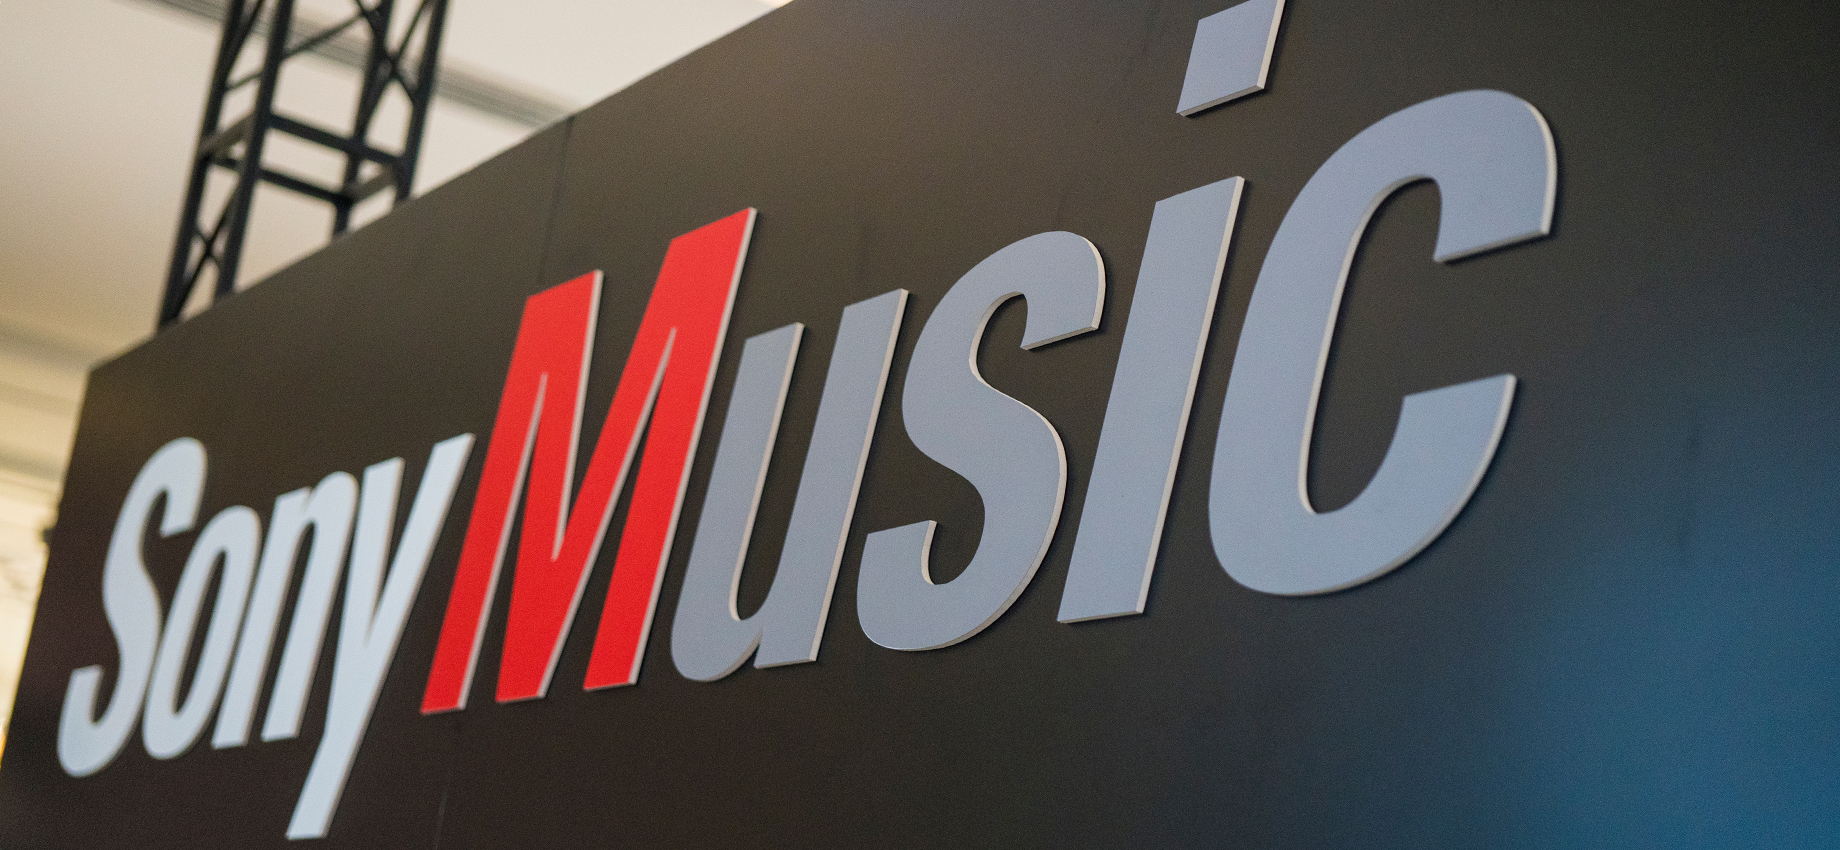 Sony Music окончательно уйдет из России: песни музыкантов лейбла удалят со стримингов в стране